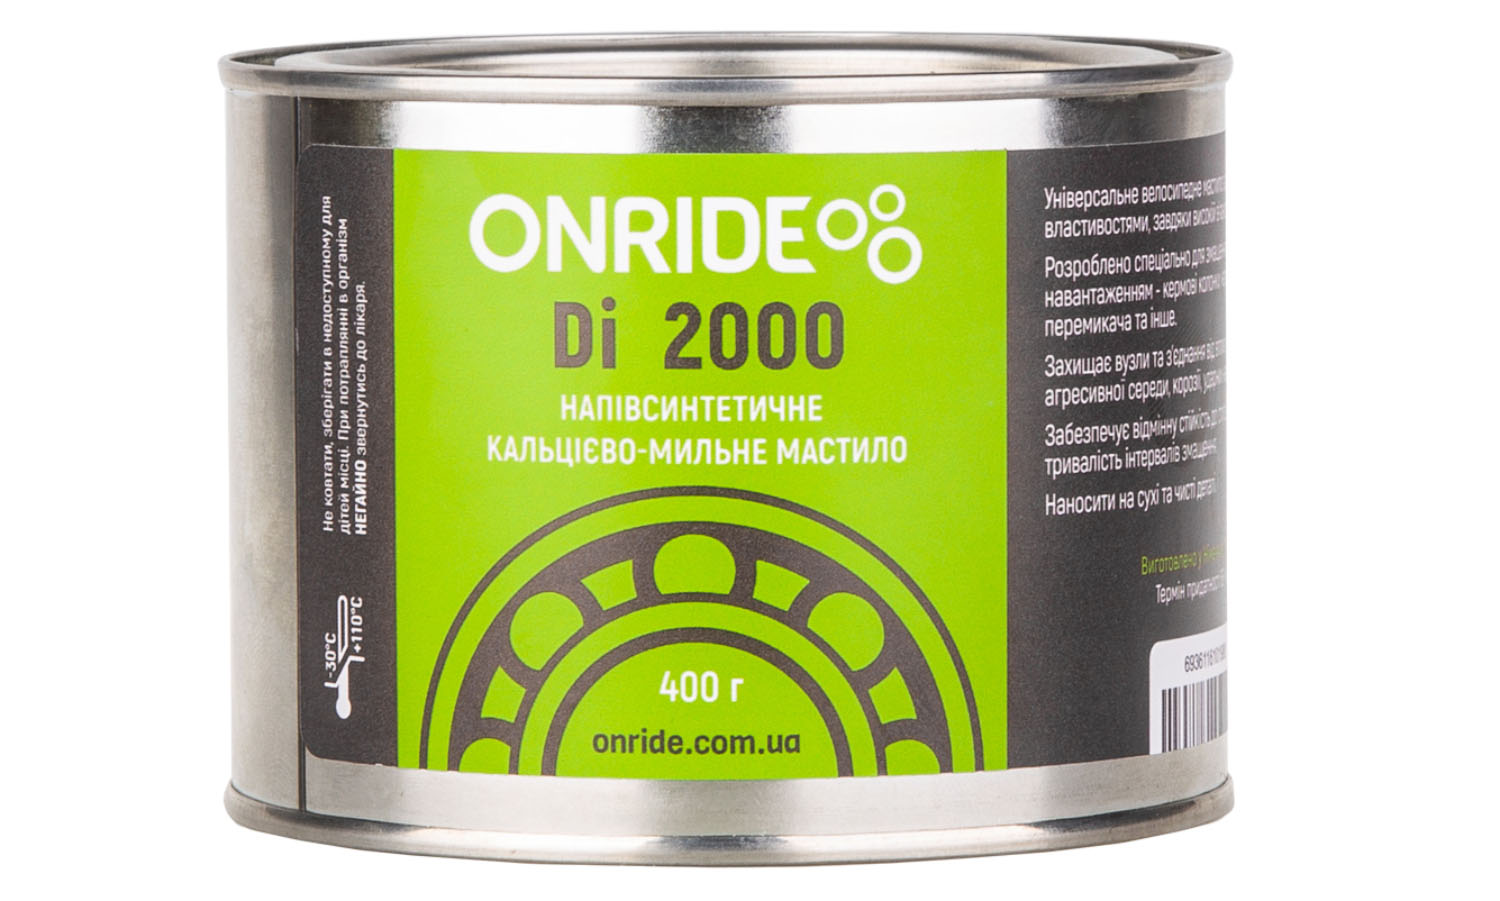 Фотография Смазка густая для подшипников ONRIDE Di 2000 400 г, металлическая тара